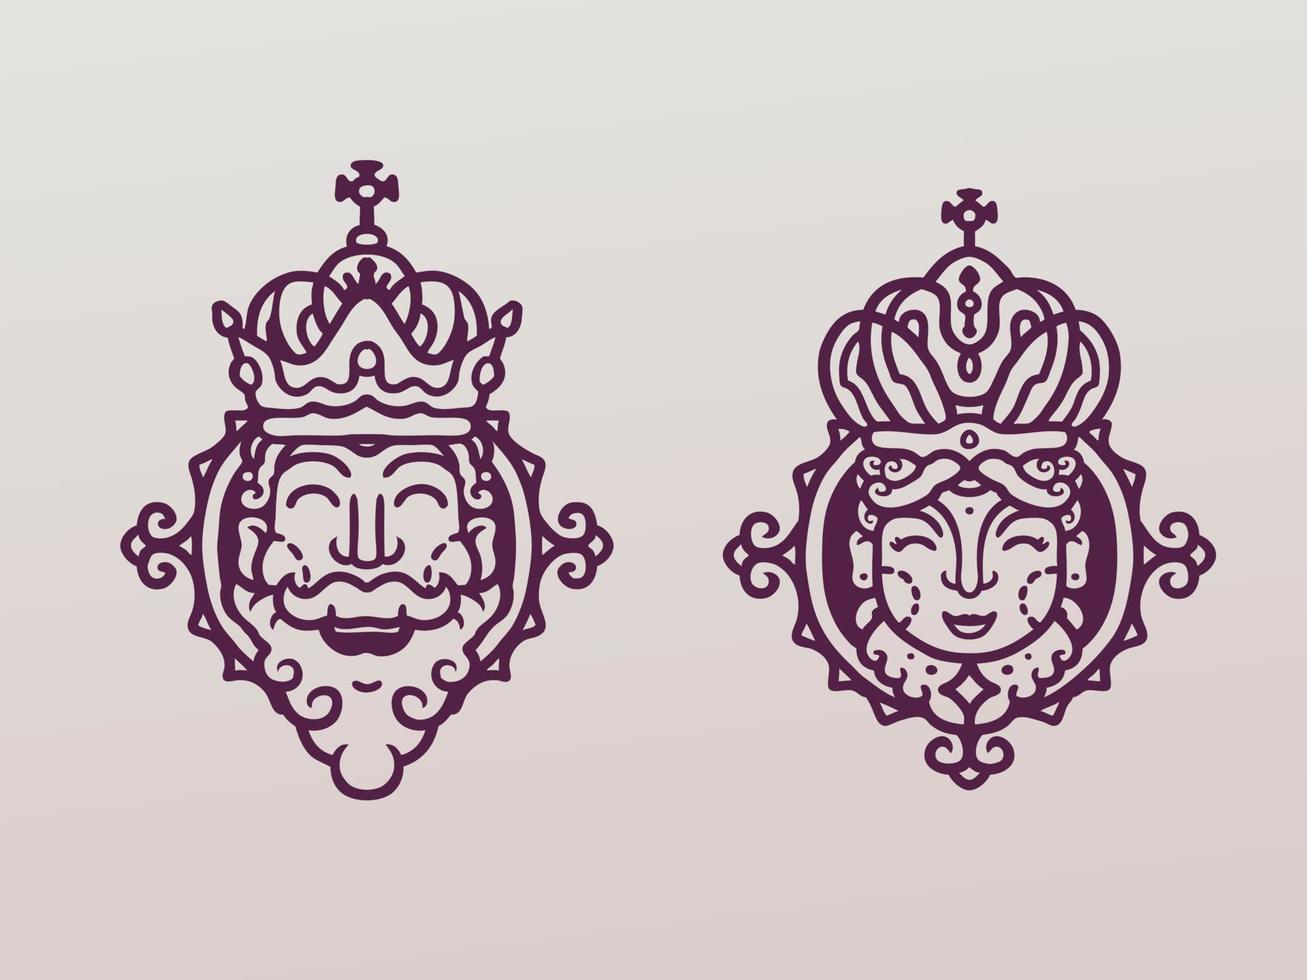 kungen och drottningen monoline illustration vektor